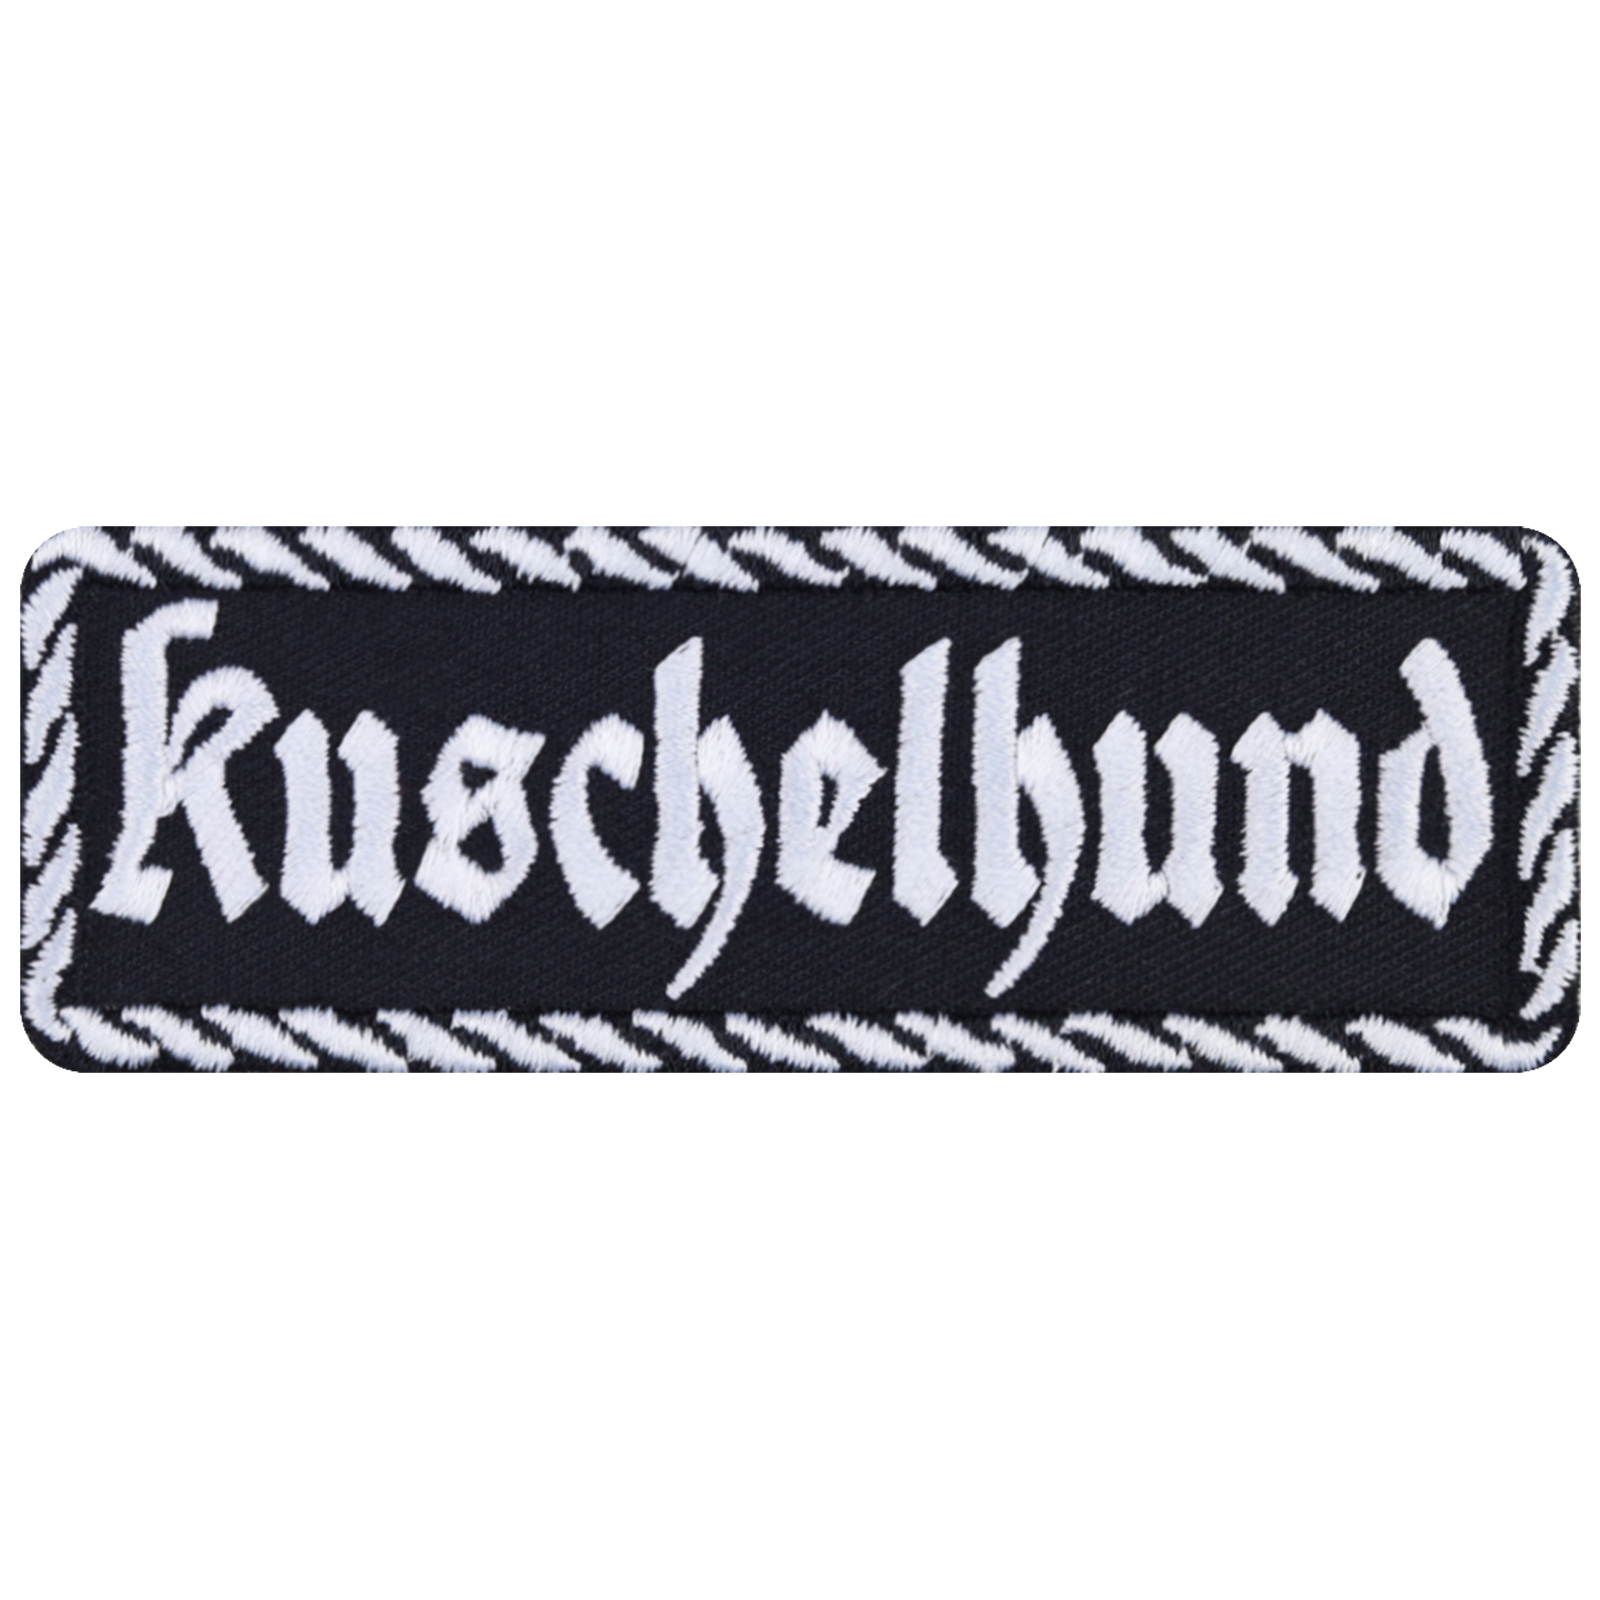 Kuschelhund - Patch